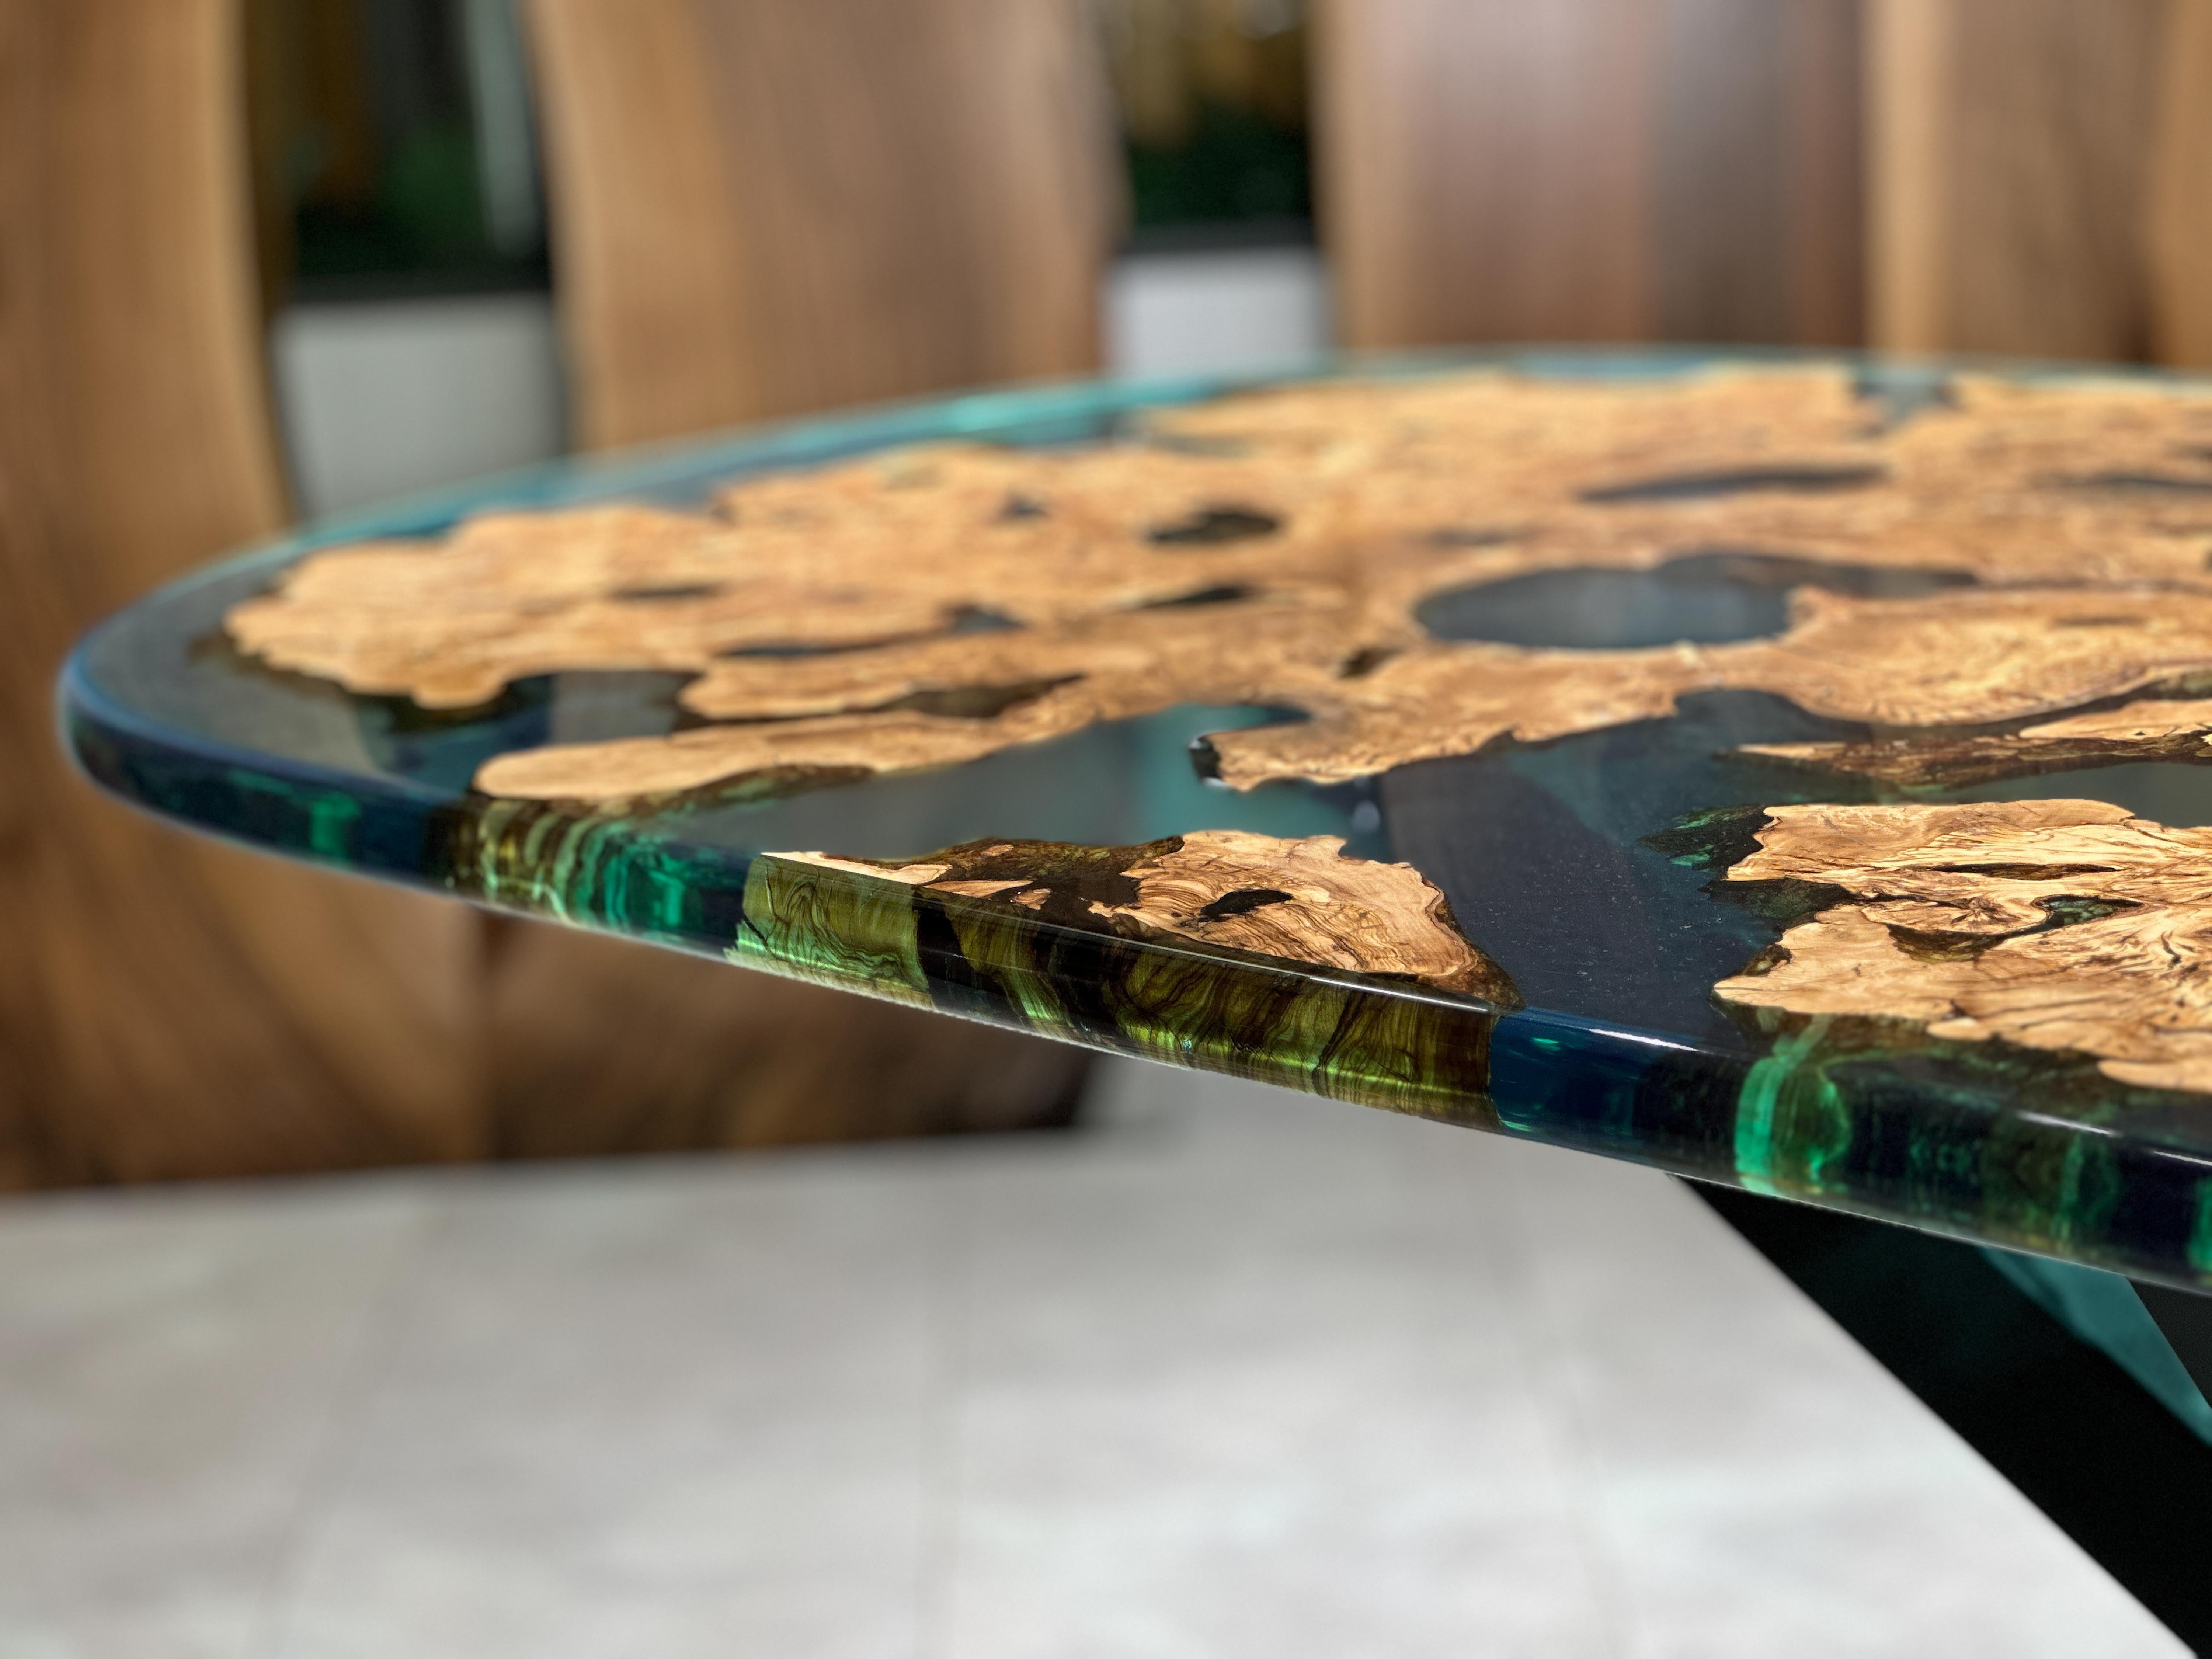 Table d'olivier en résine époxy verte

Cette table est fabriquée en bois de noyer et en époxy noir transparent. 

Des tailles, des couleurs et des finitions personnalisées sont disponibles !